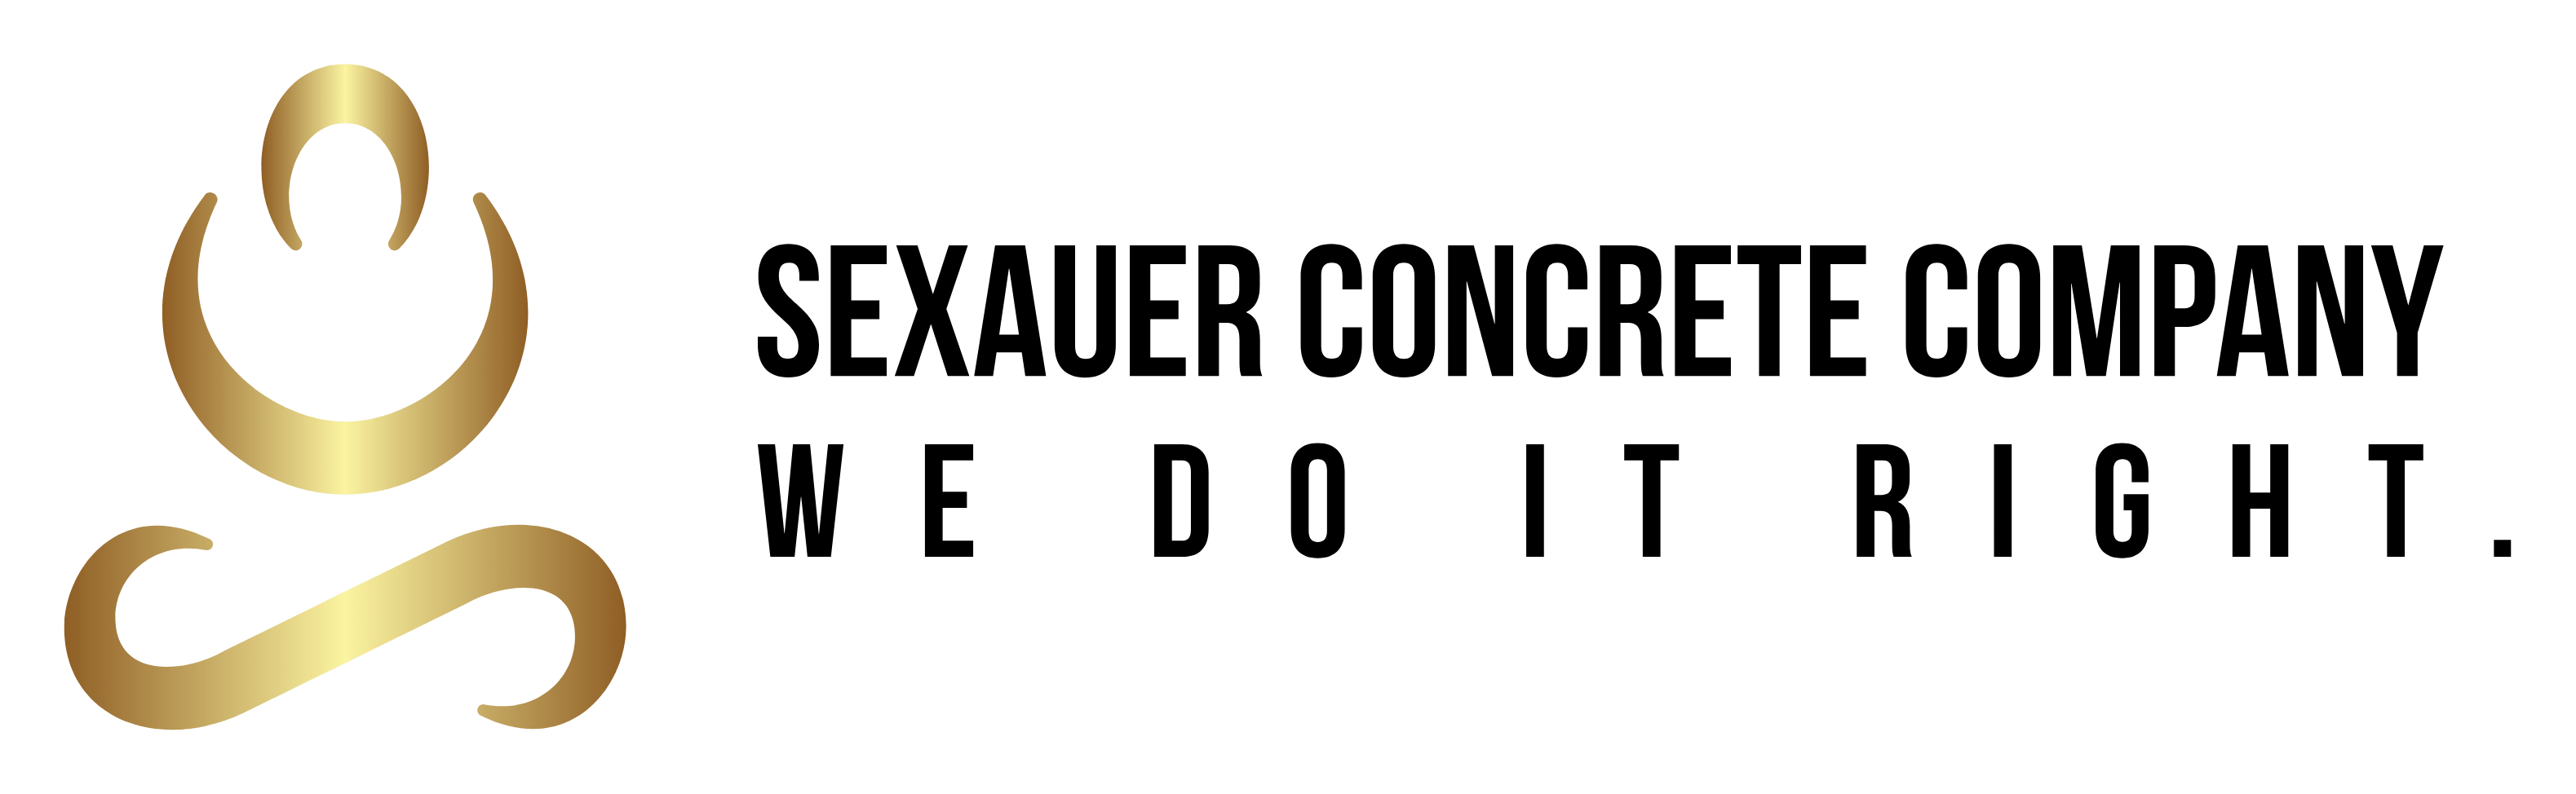 Sexauer Concrete